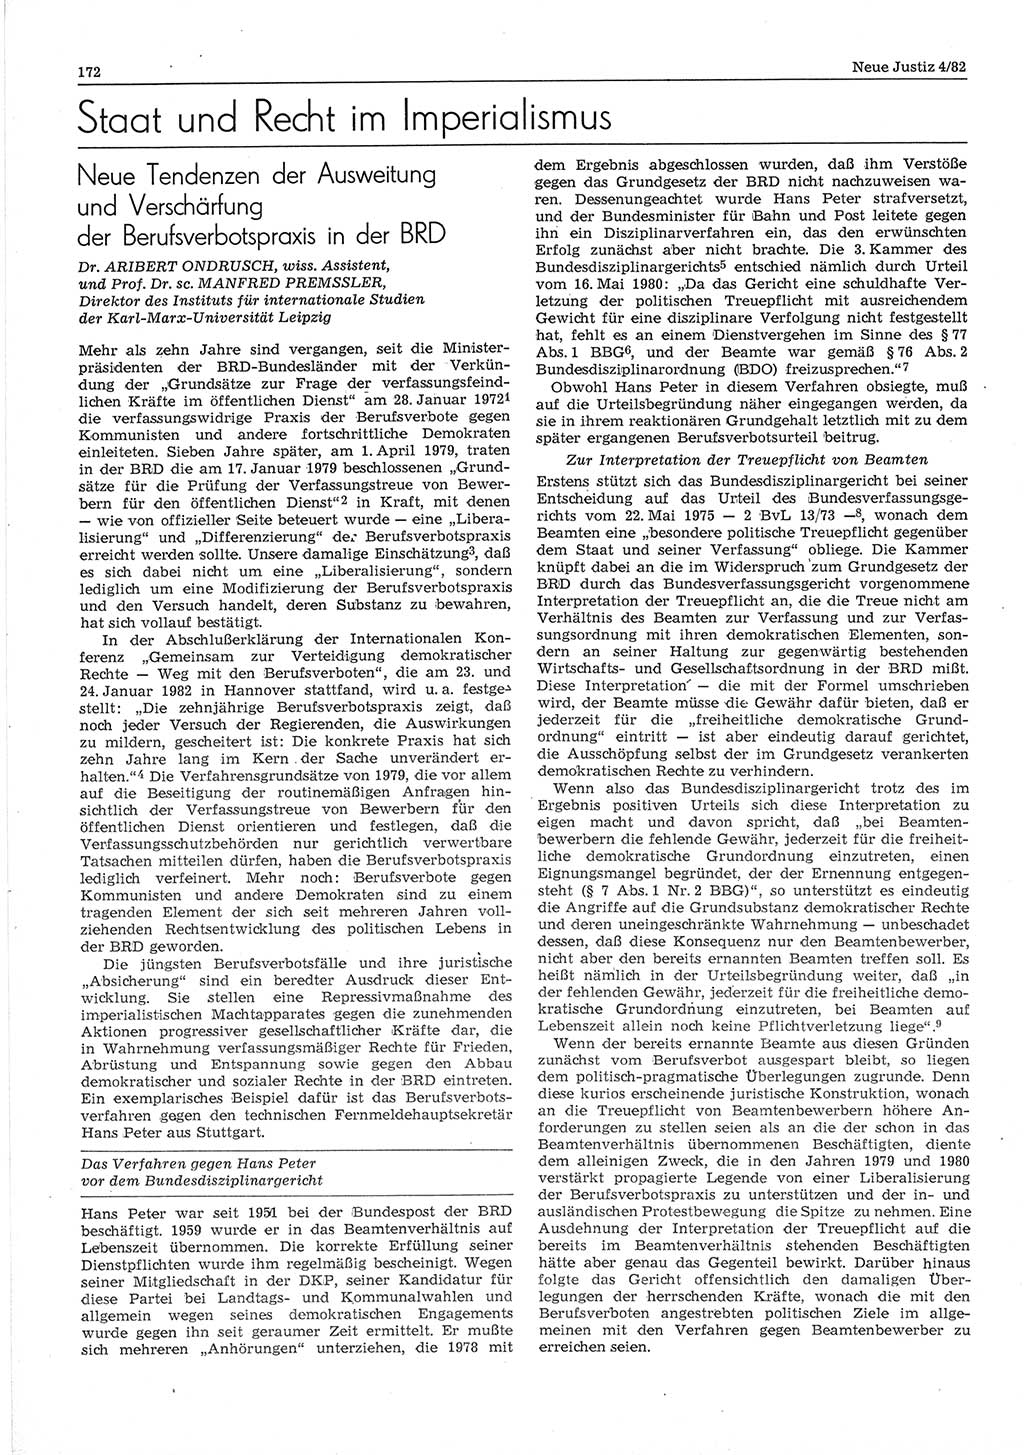 Neue Justiz (NJ), Zeitschrift für sozialistisches Recht und Gesetzlichkeit [Deutsche Demokratische Republik (DDR)], 36. Jahrgang 1982, Seite 172 (NJ DDR 1982, S. 172)